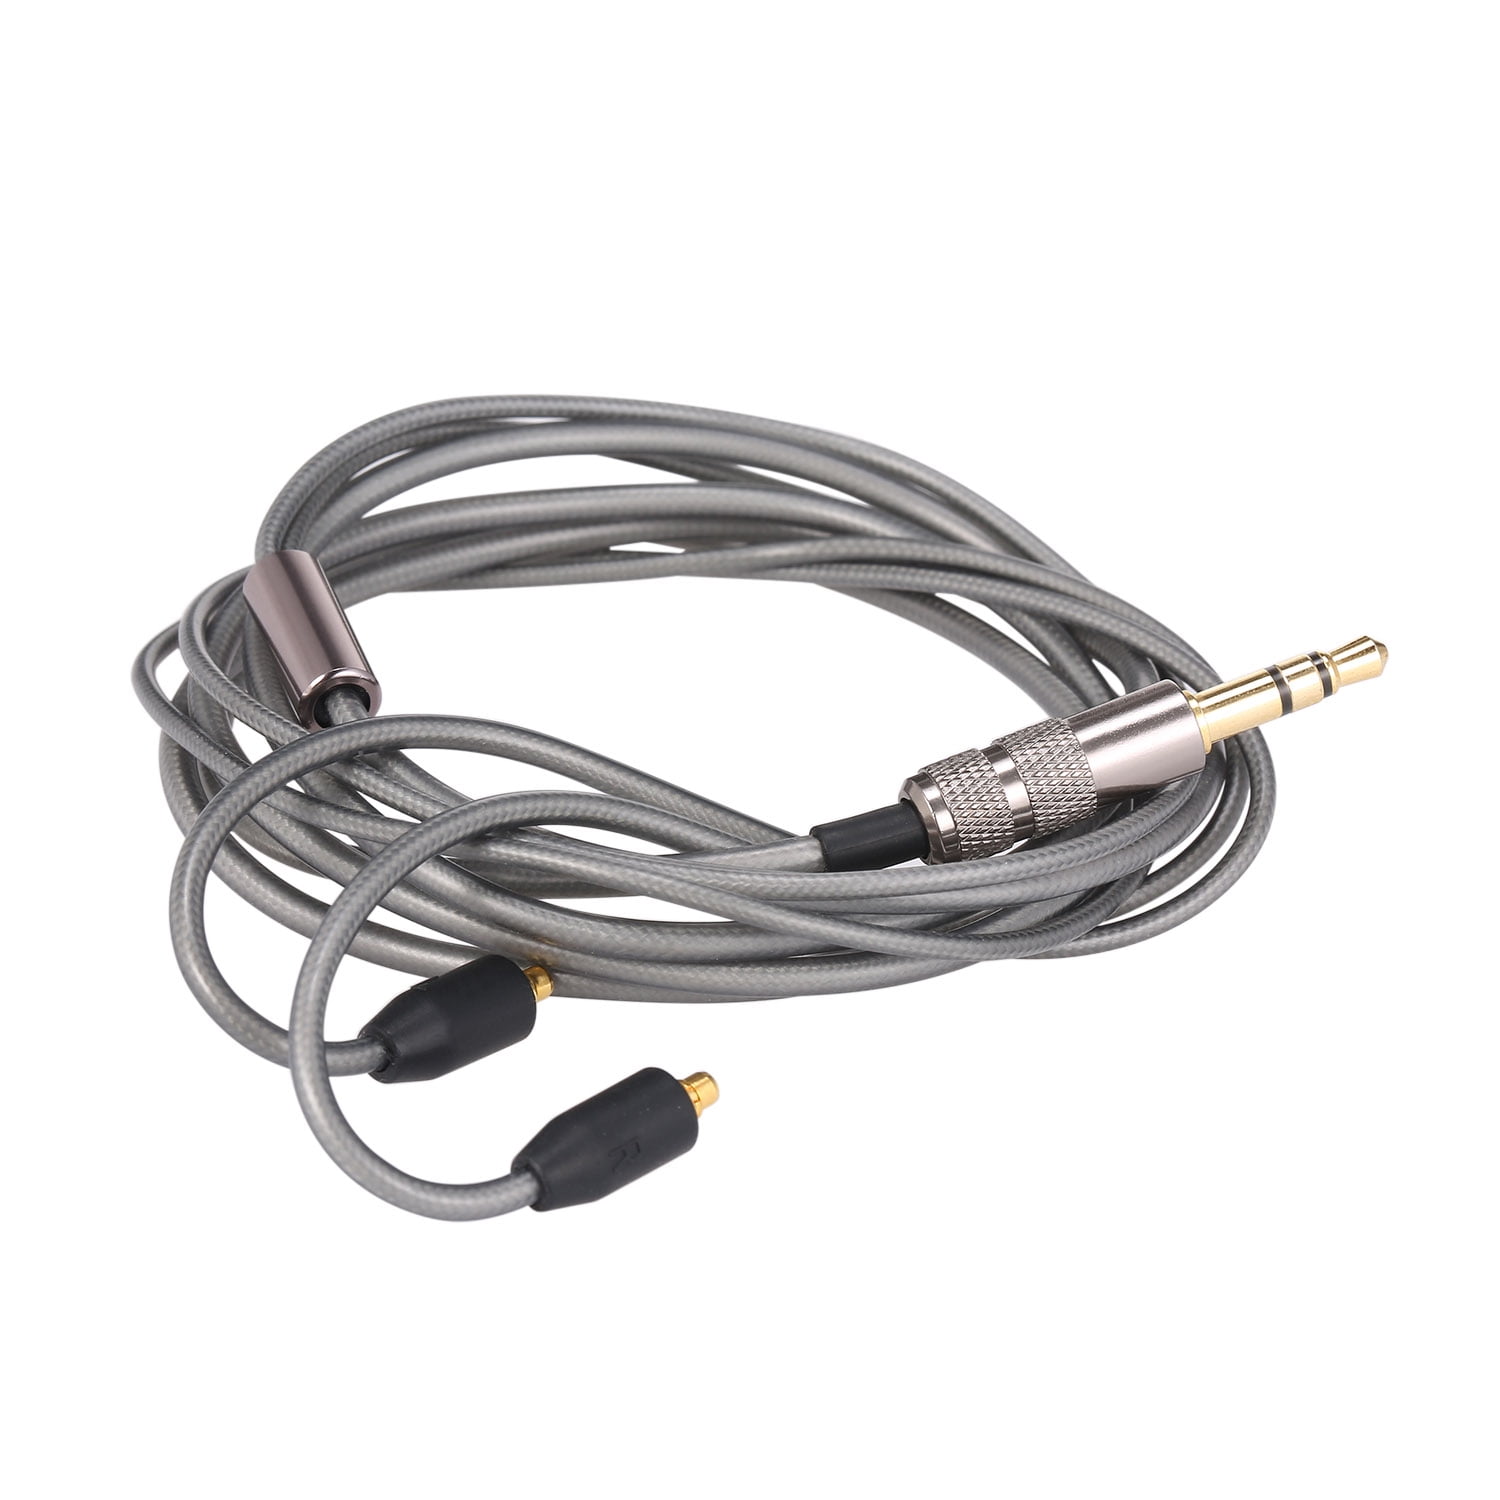 Replacement Audio Cable Cord For Shure SE215 SE315 SE425 SE535 SE846 Earphones 